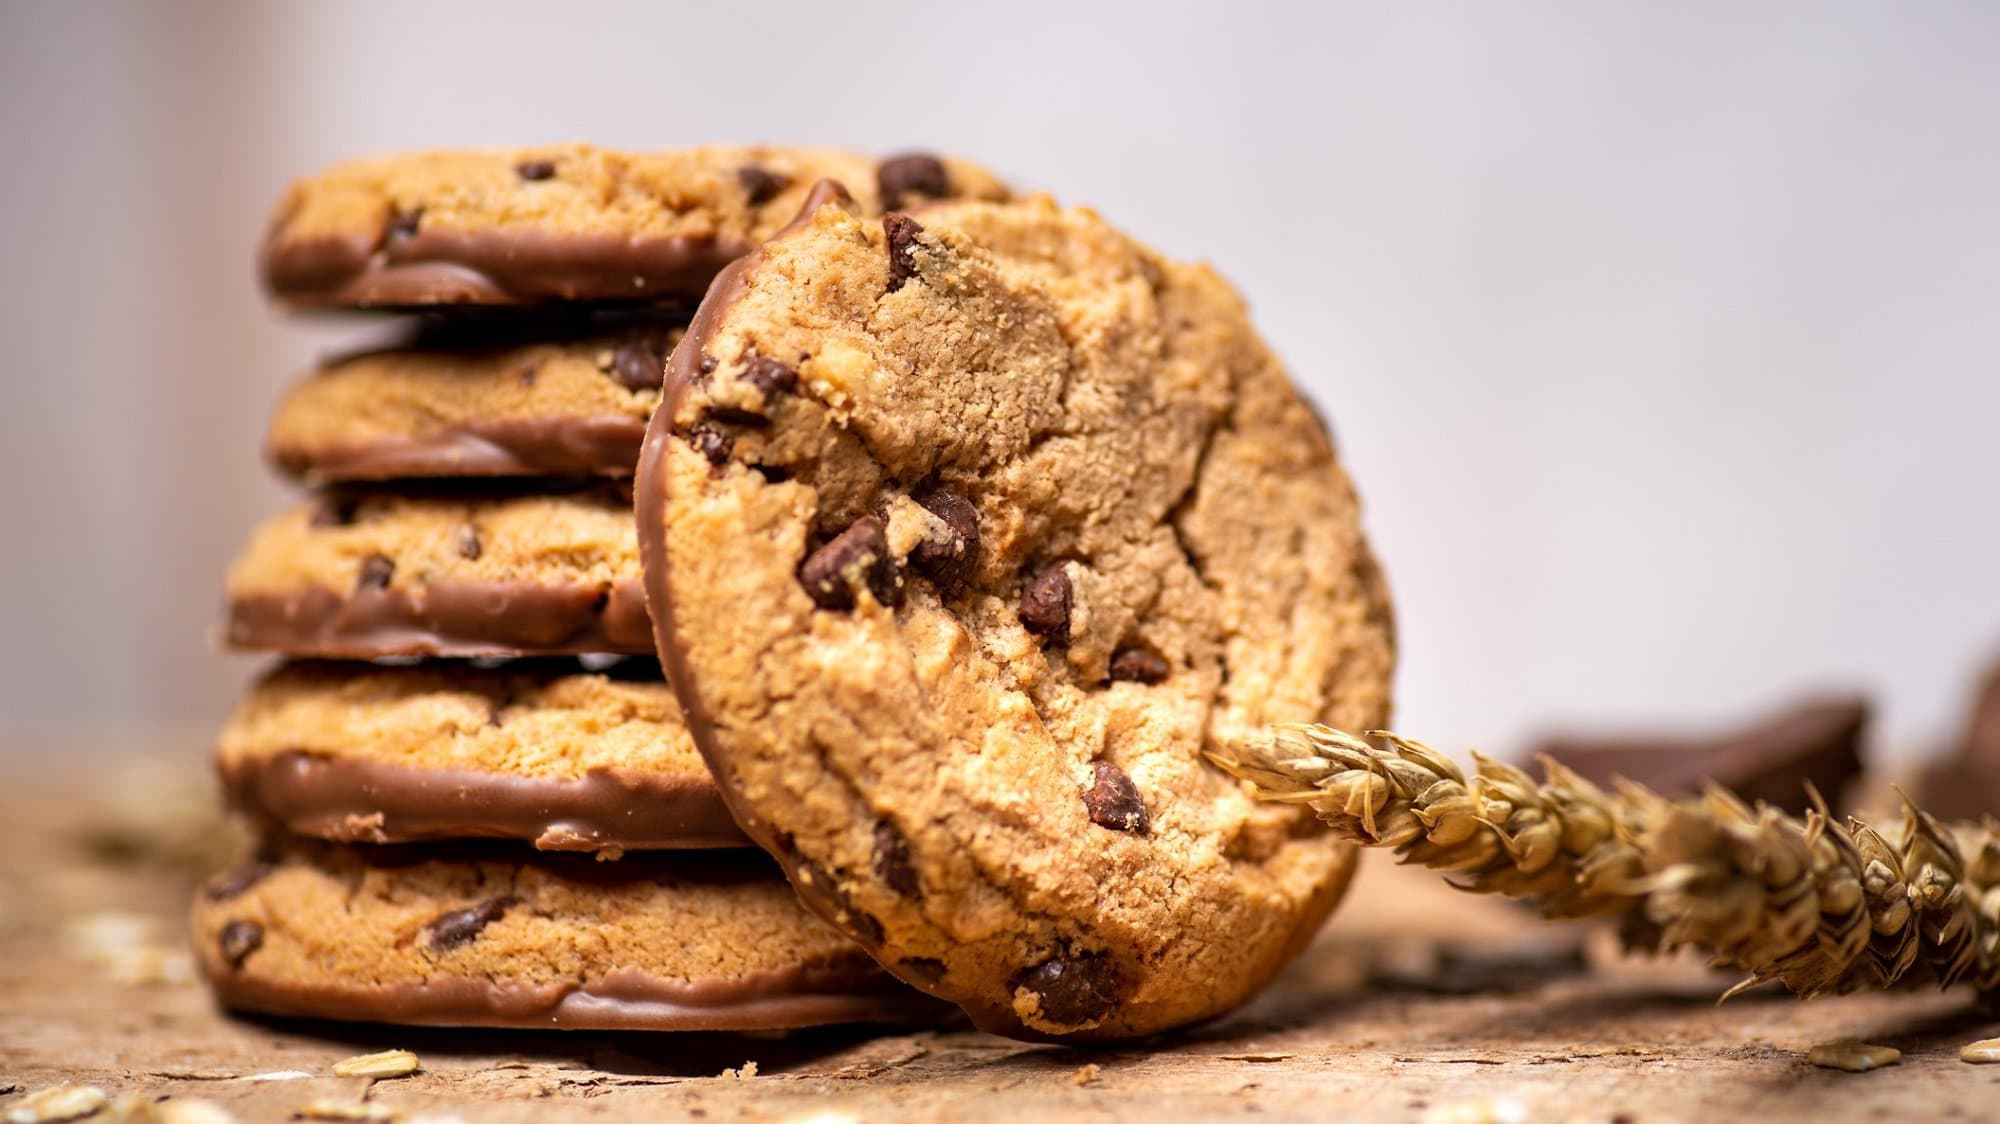 Frontalsicht: An einem Stapel Peanut and Chocolate Cookies, ist ein weiterer Keks angelehnt. Daneben liegt eine Weizenähre.